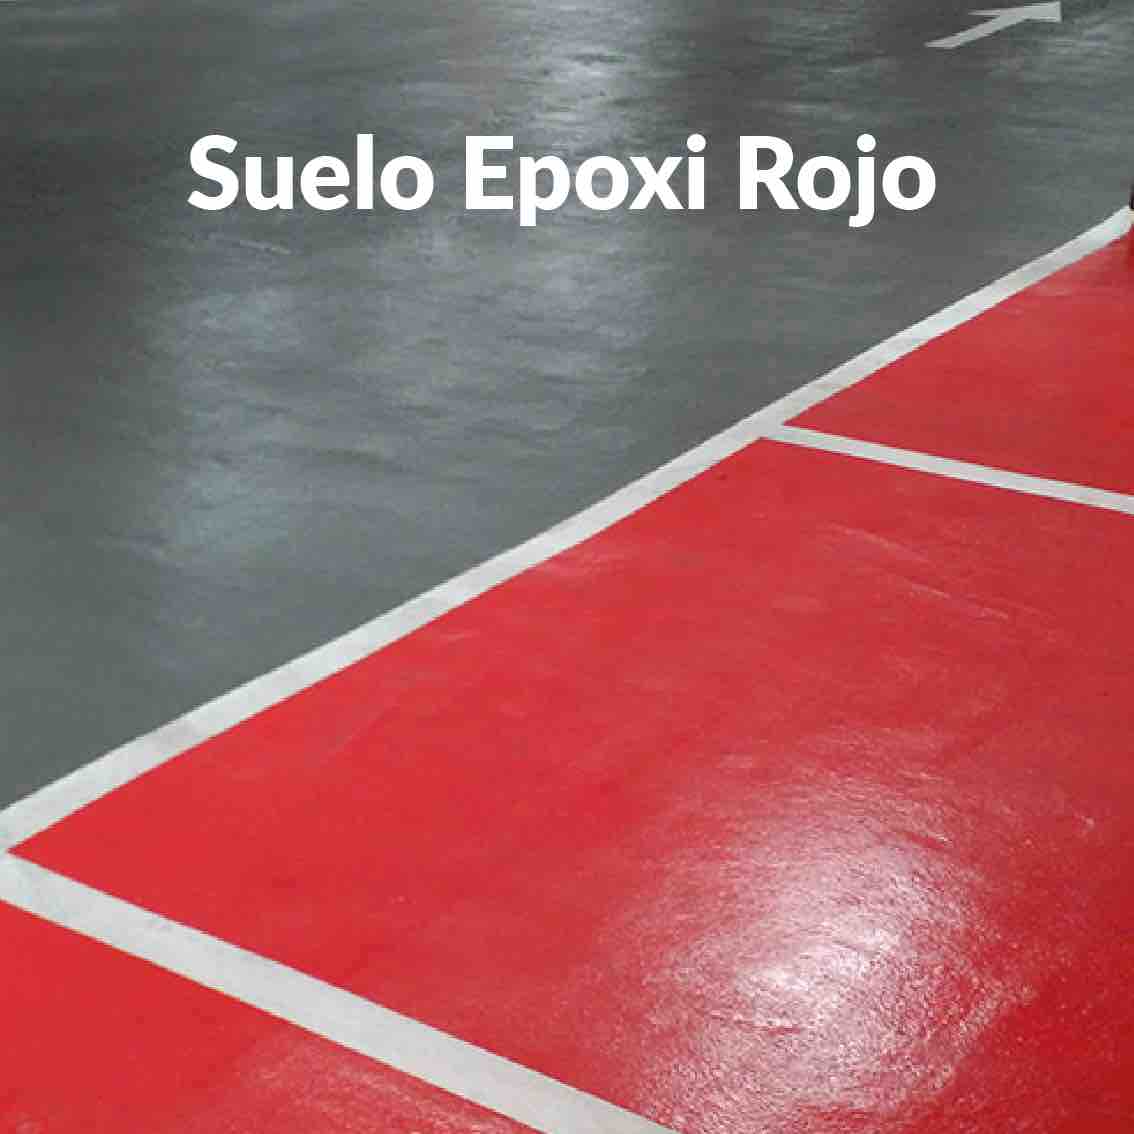 Suelo-Epoxi-Rojo-1